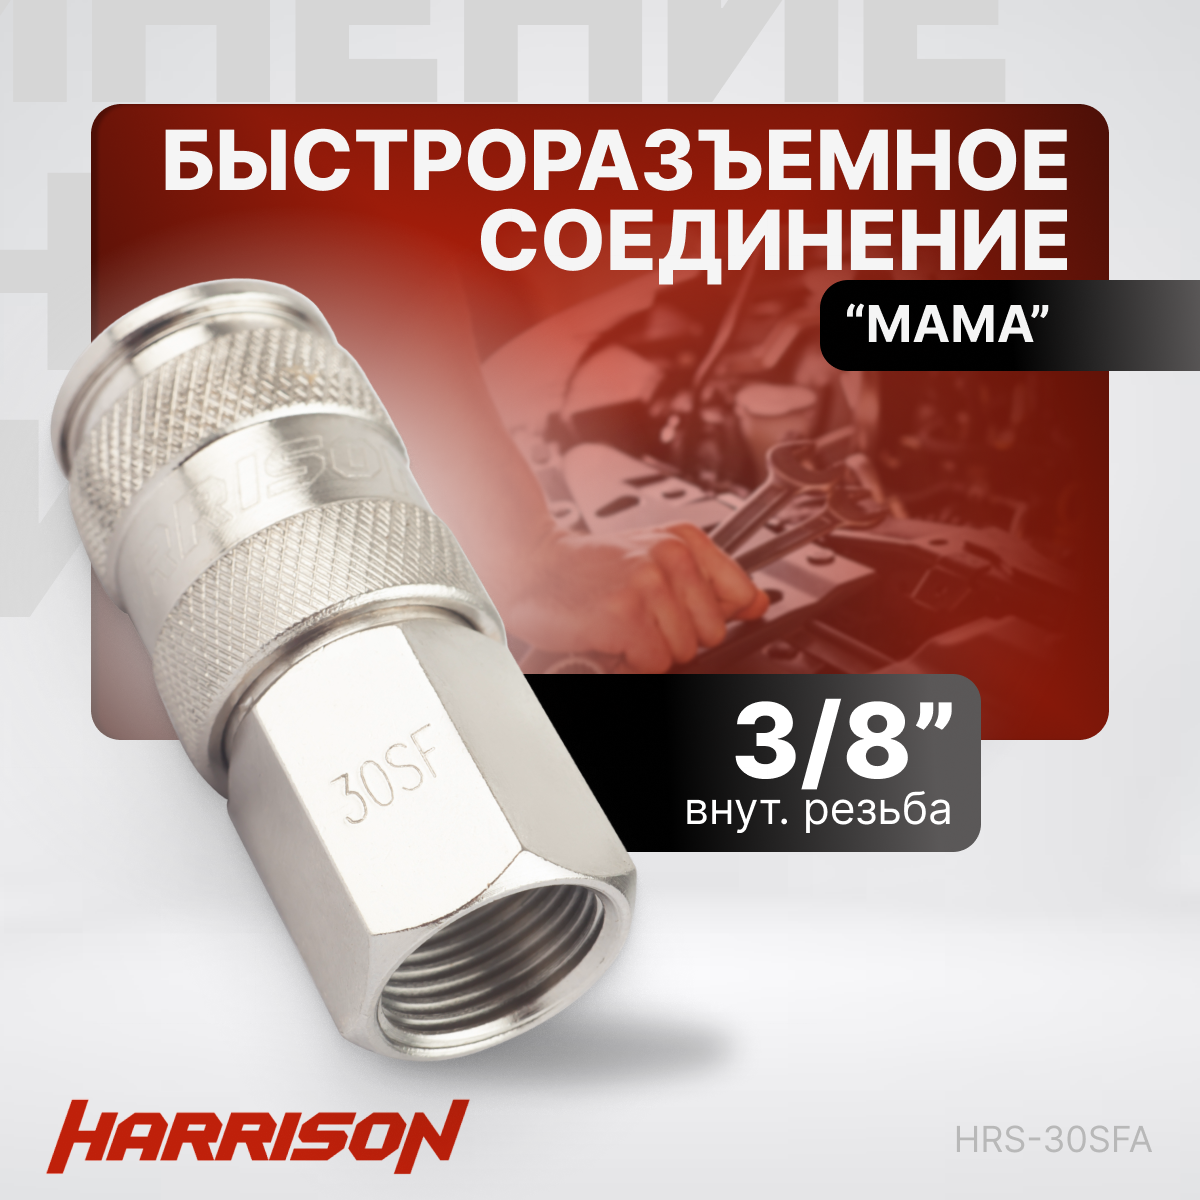 Пневматическое быстроразъёмное соединение 3/8" "мама" Harrison HRS-30SFA